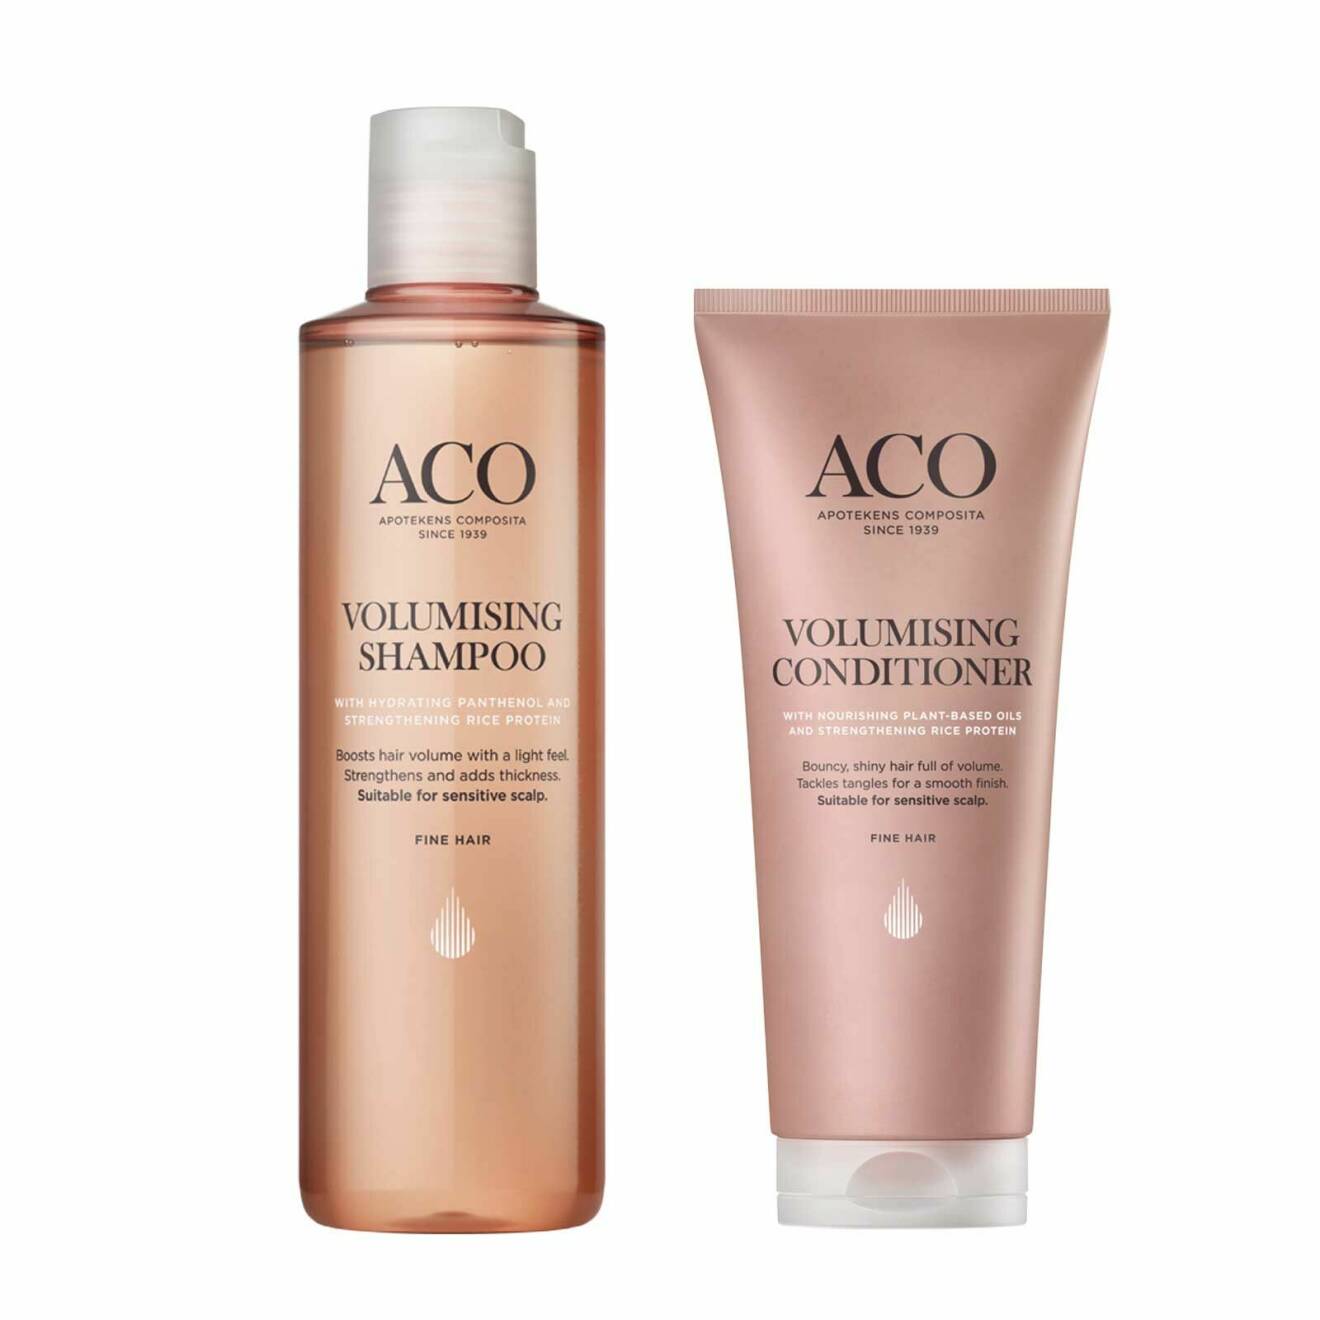 Volumizing shampoo och conditioner från Aco.